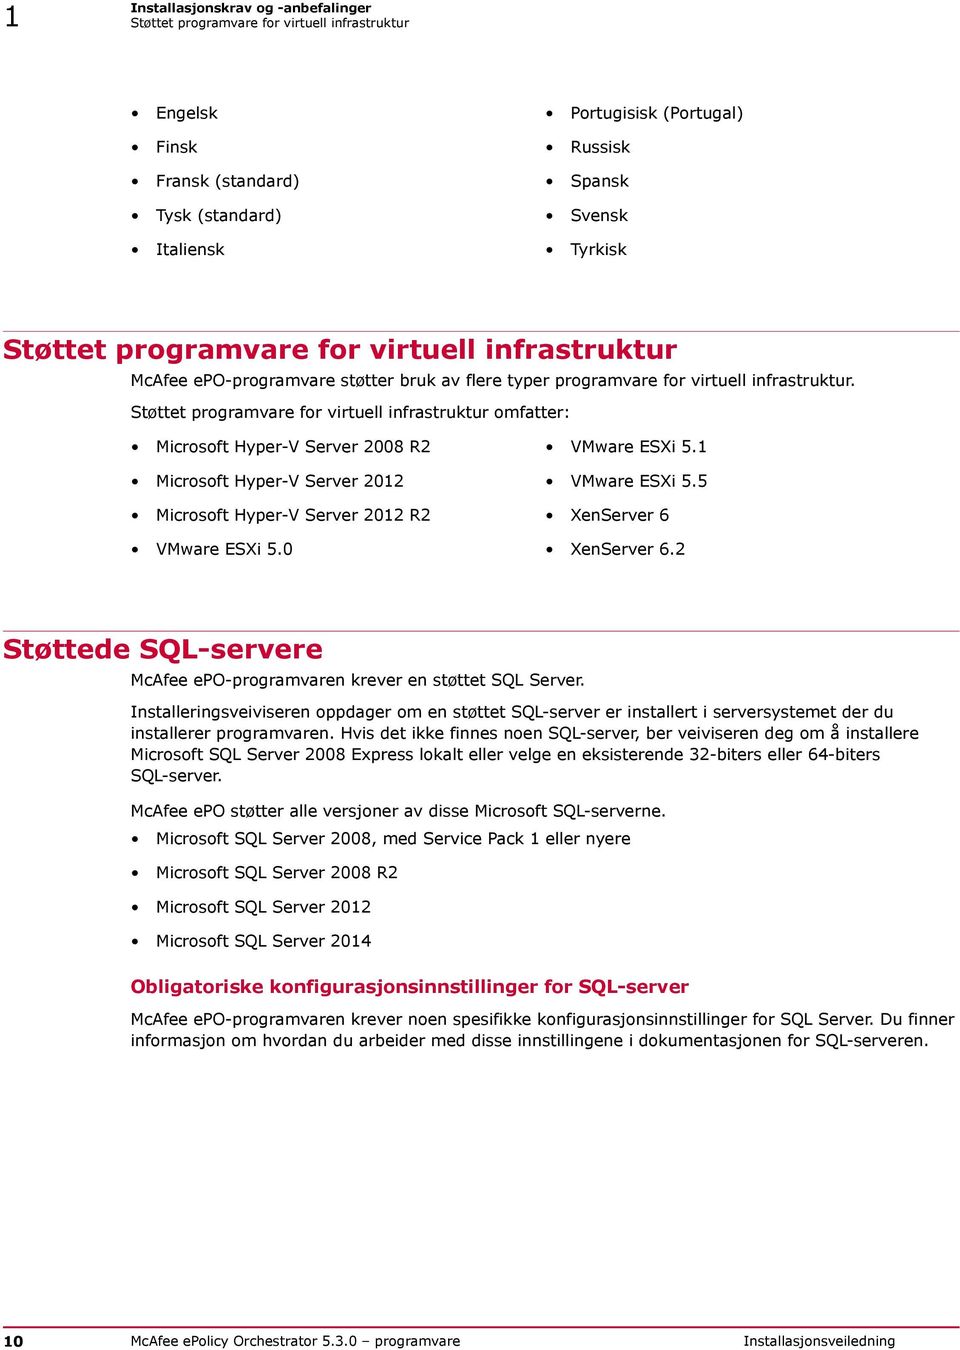 Støttet programvare for virtuell infrastruktur omfatter: Microsoft Hyper-V Server 2008 R2 VMware ESXi 5.1 Microsoft Hyper-V Server 2012 VMware ESXi 5.